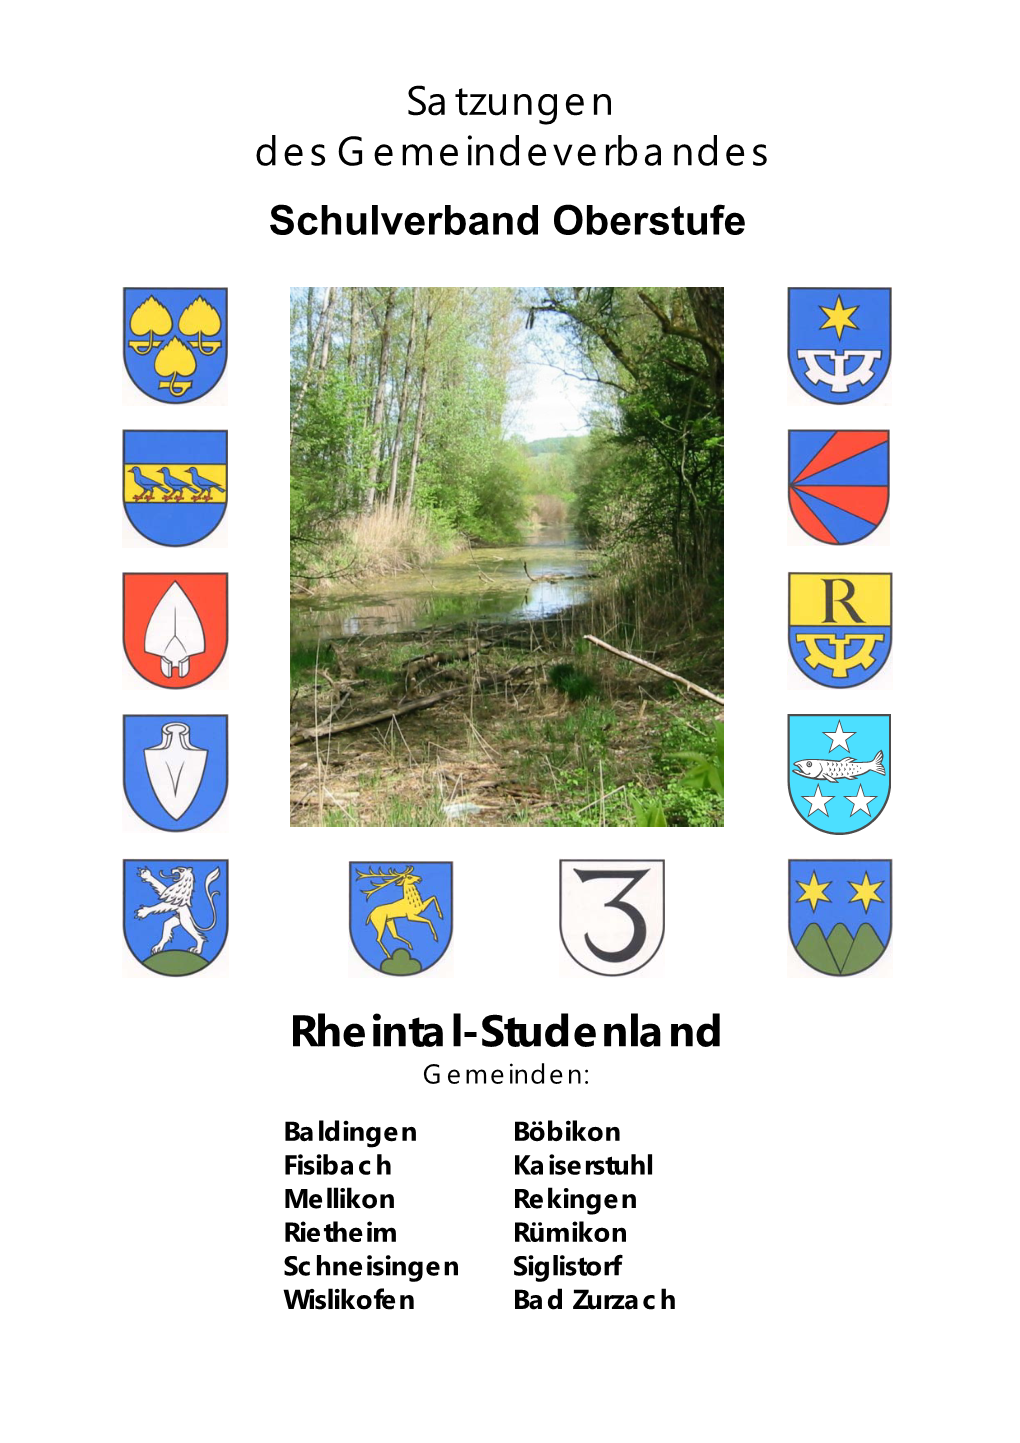 Rheintal-Studenland Gemeinden